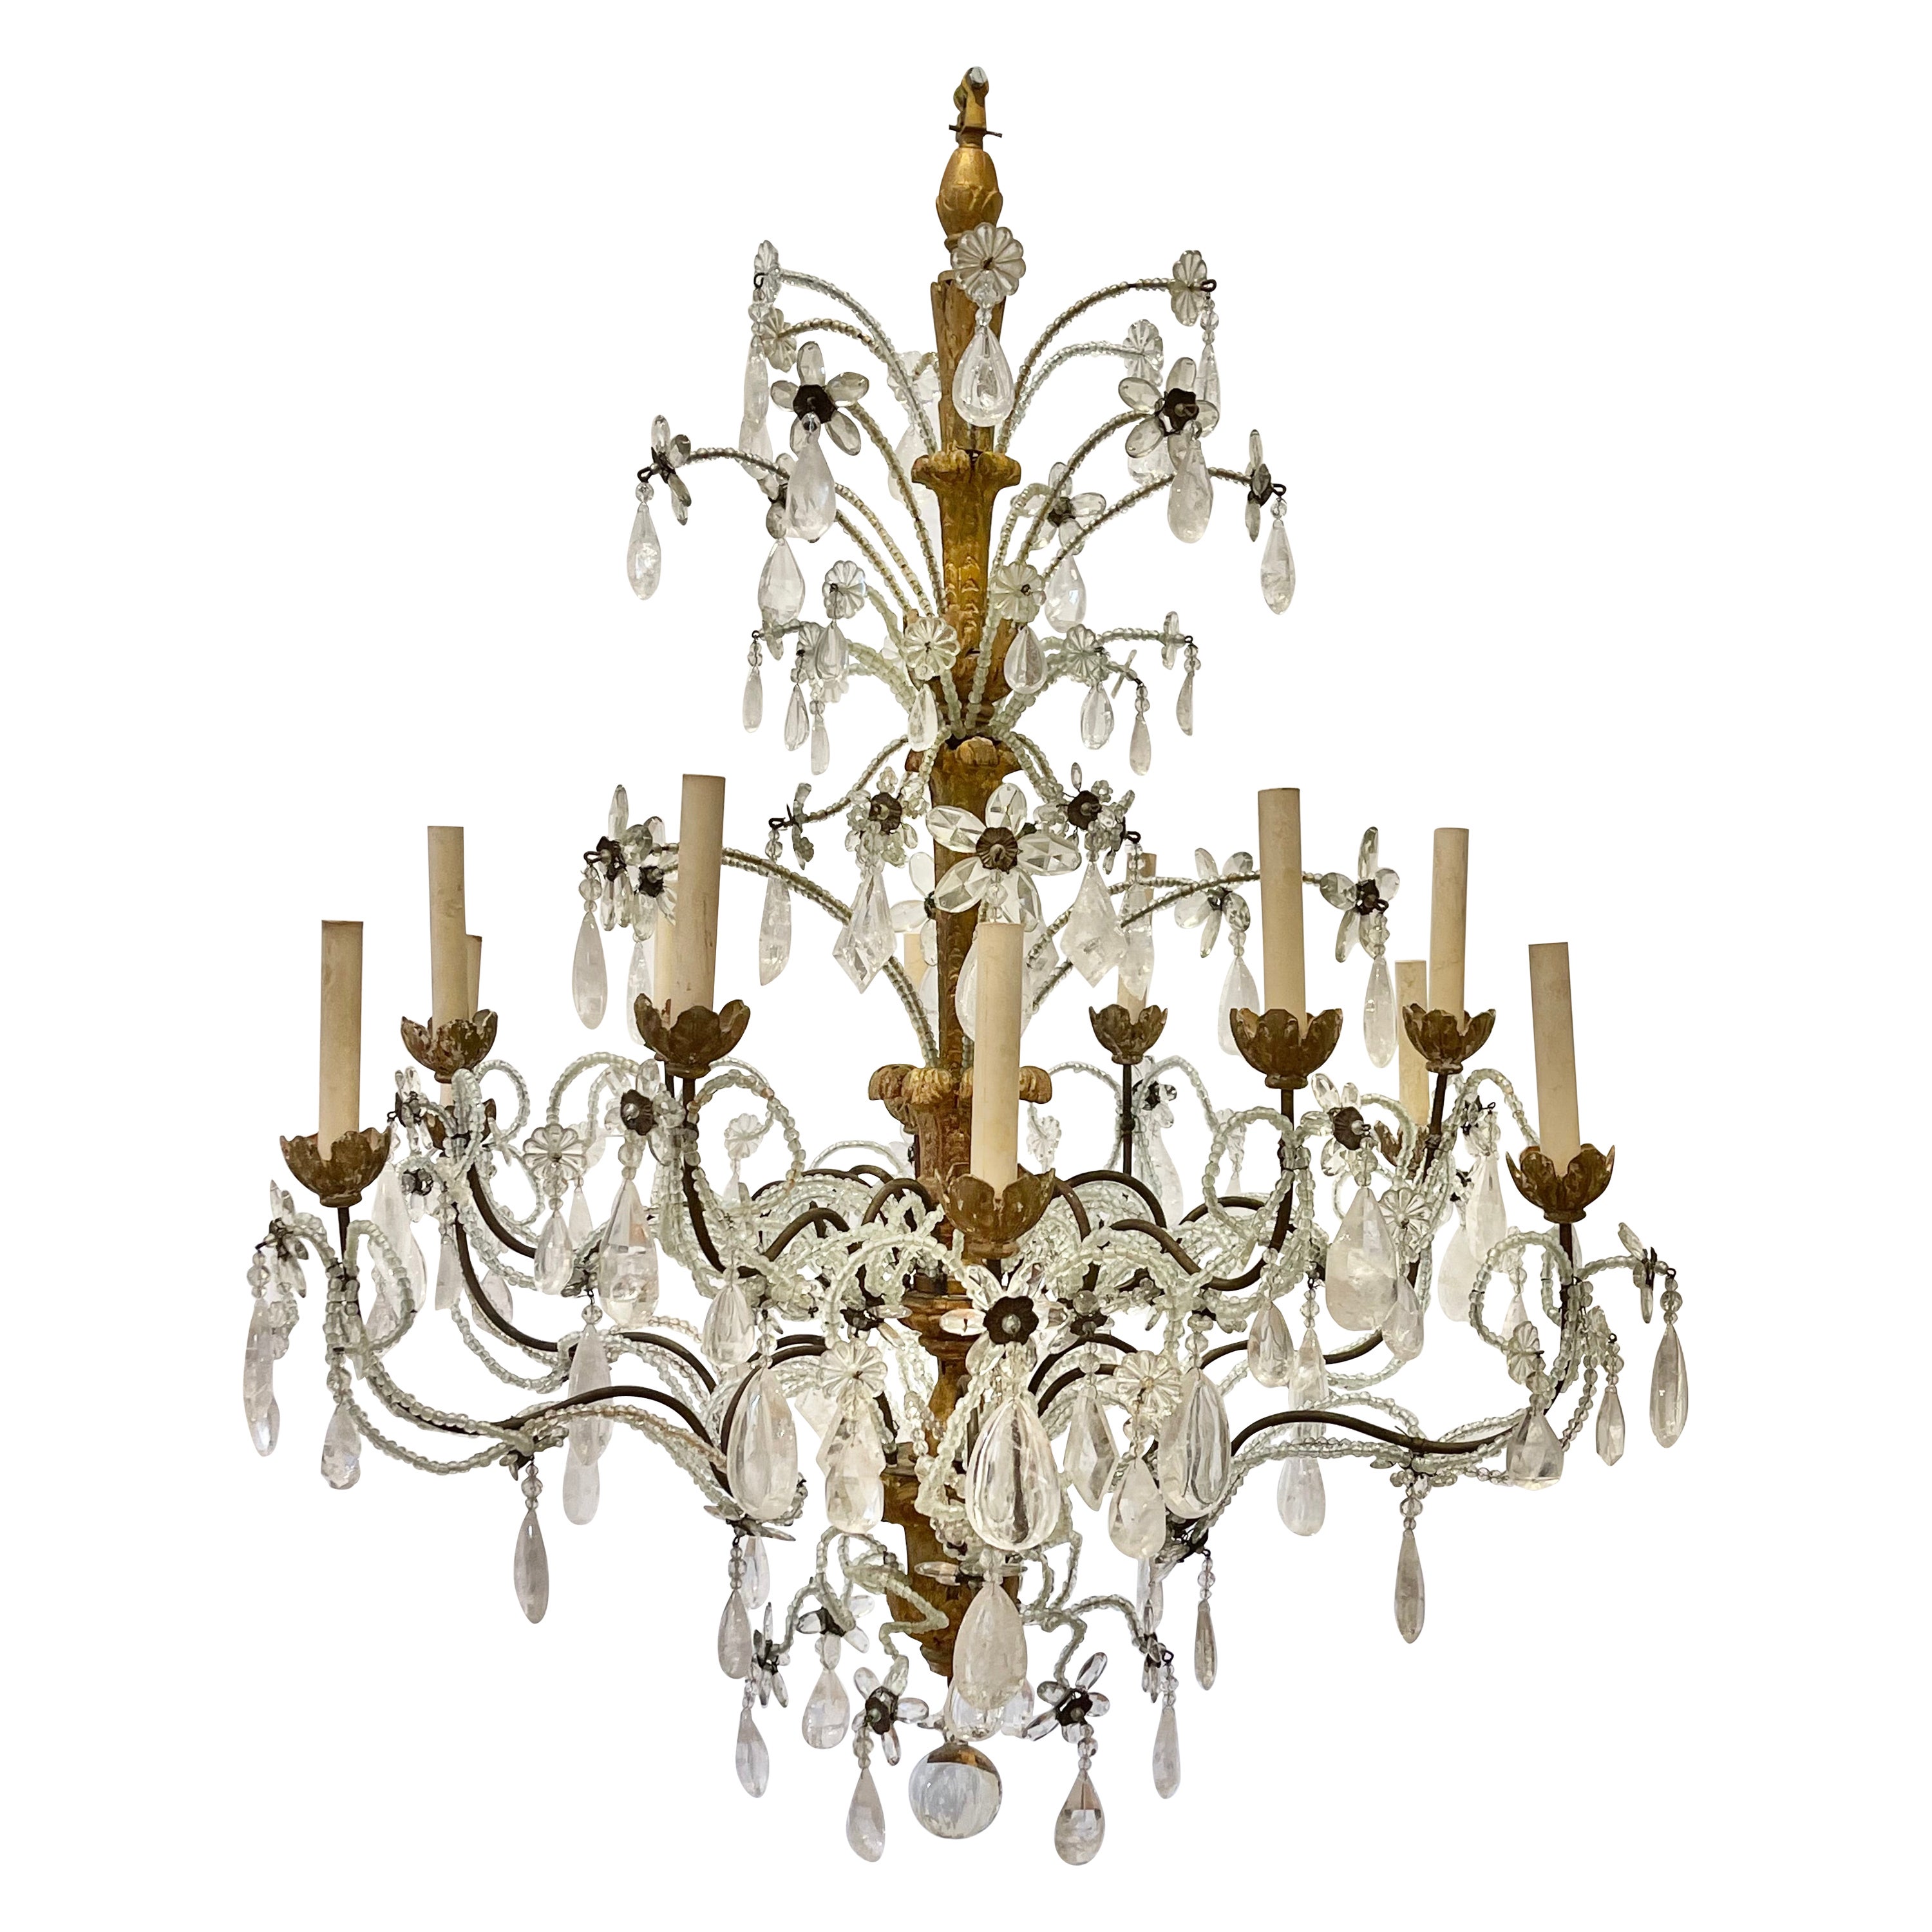 Lustre à douze lumières en bois doré, métal et cristal de roche italien du XVIIIe siècle